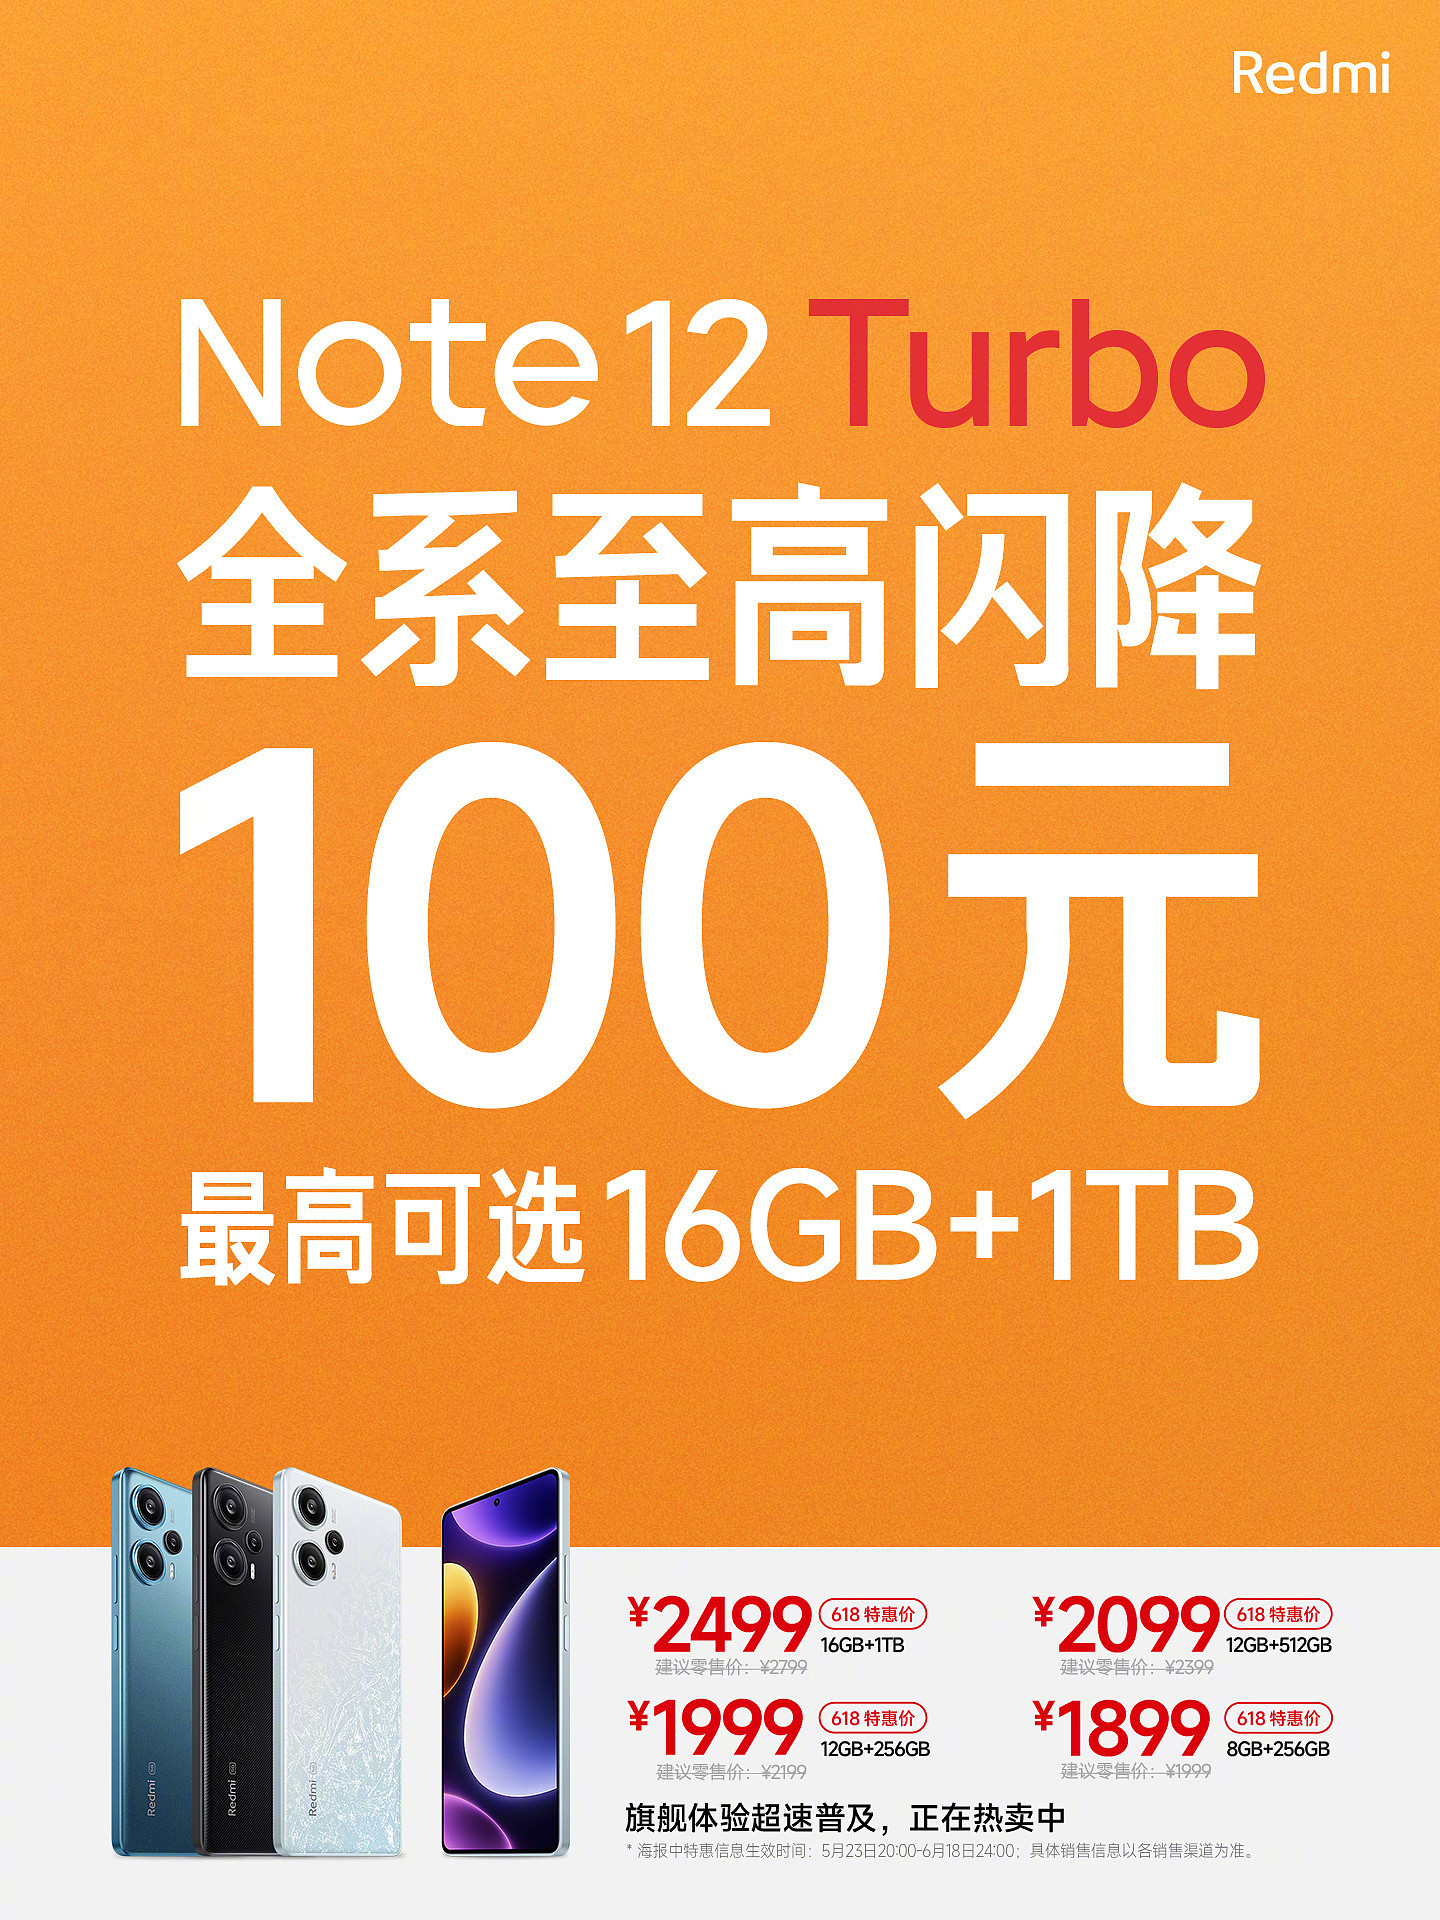 小米 Redmi Note 12 Turbo 手机全系闪降 100 元，到手 1799 元起今晚开售 - 1